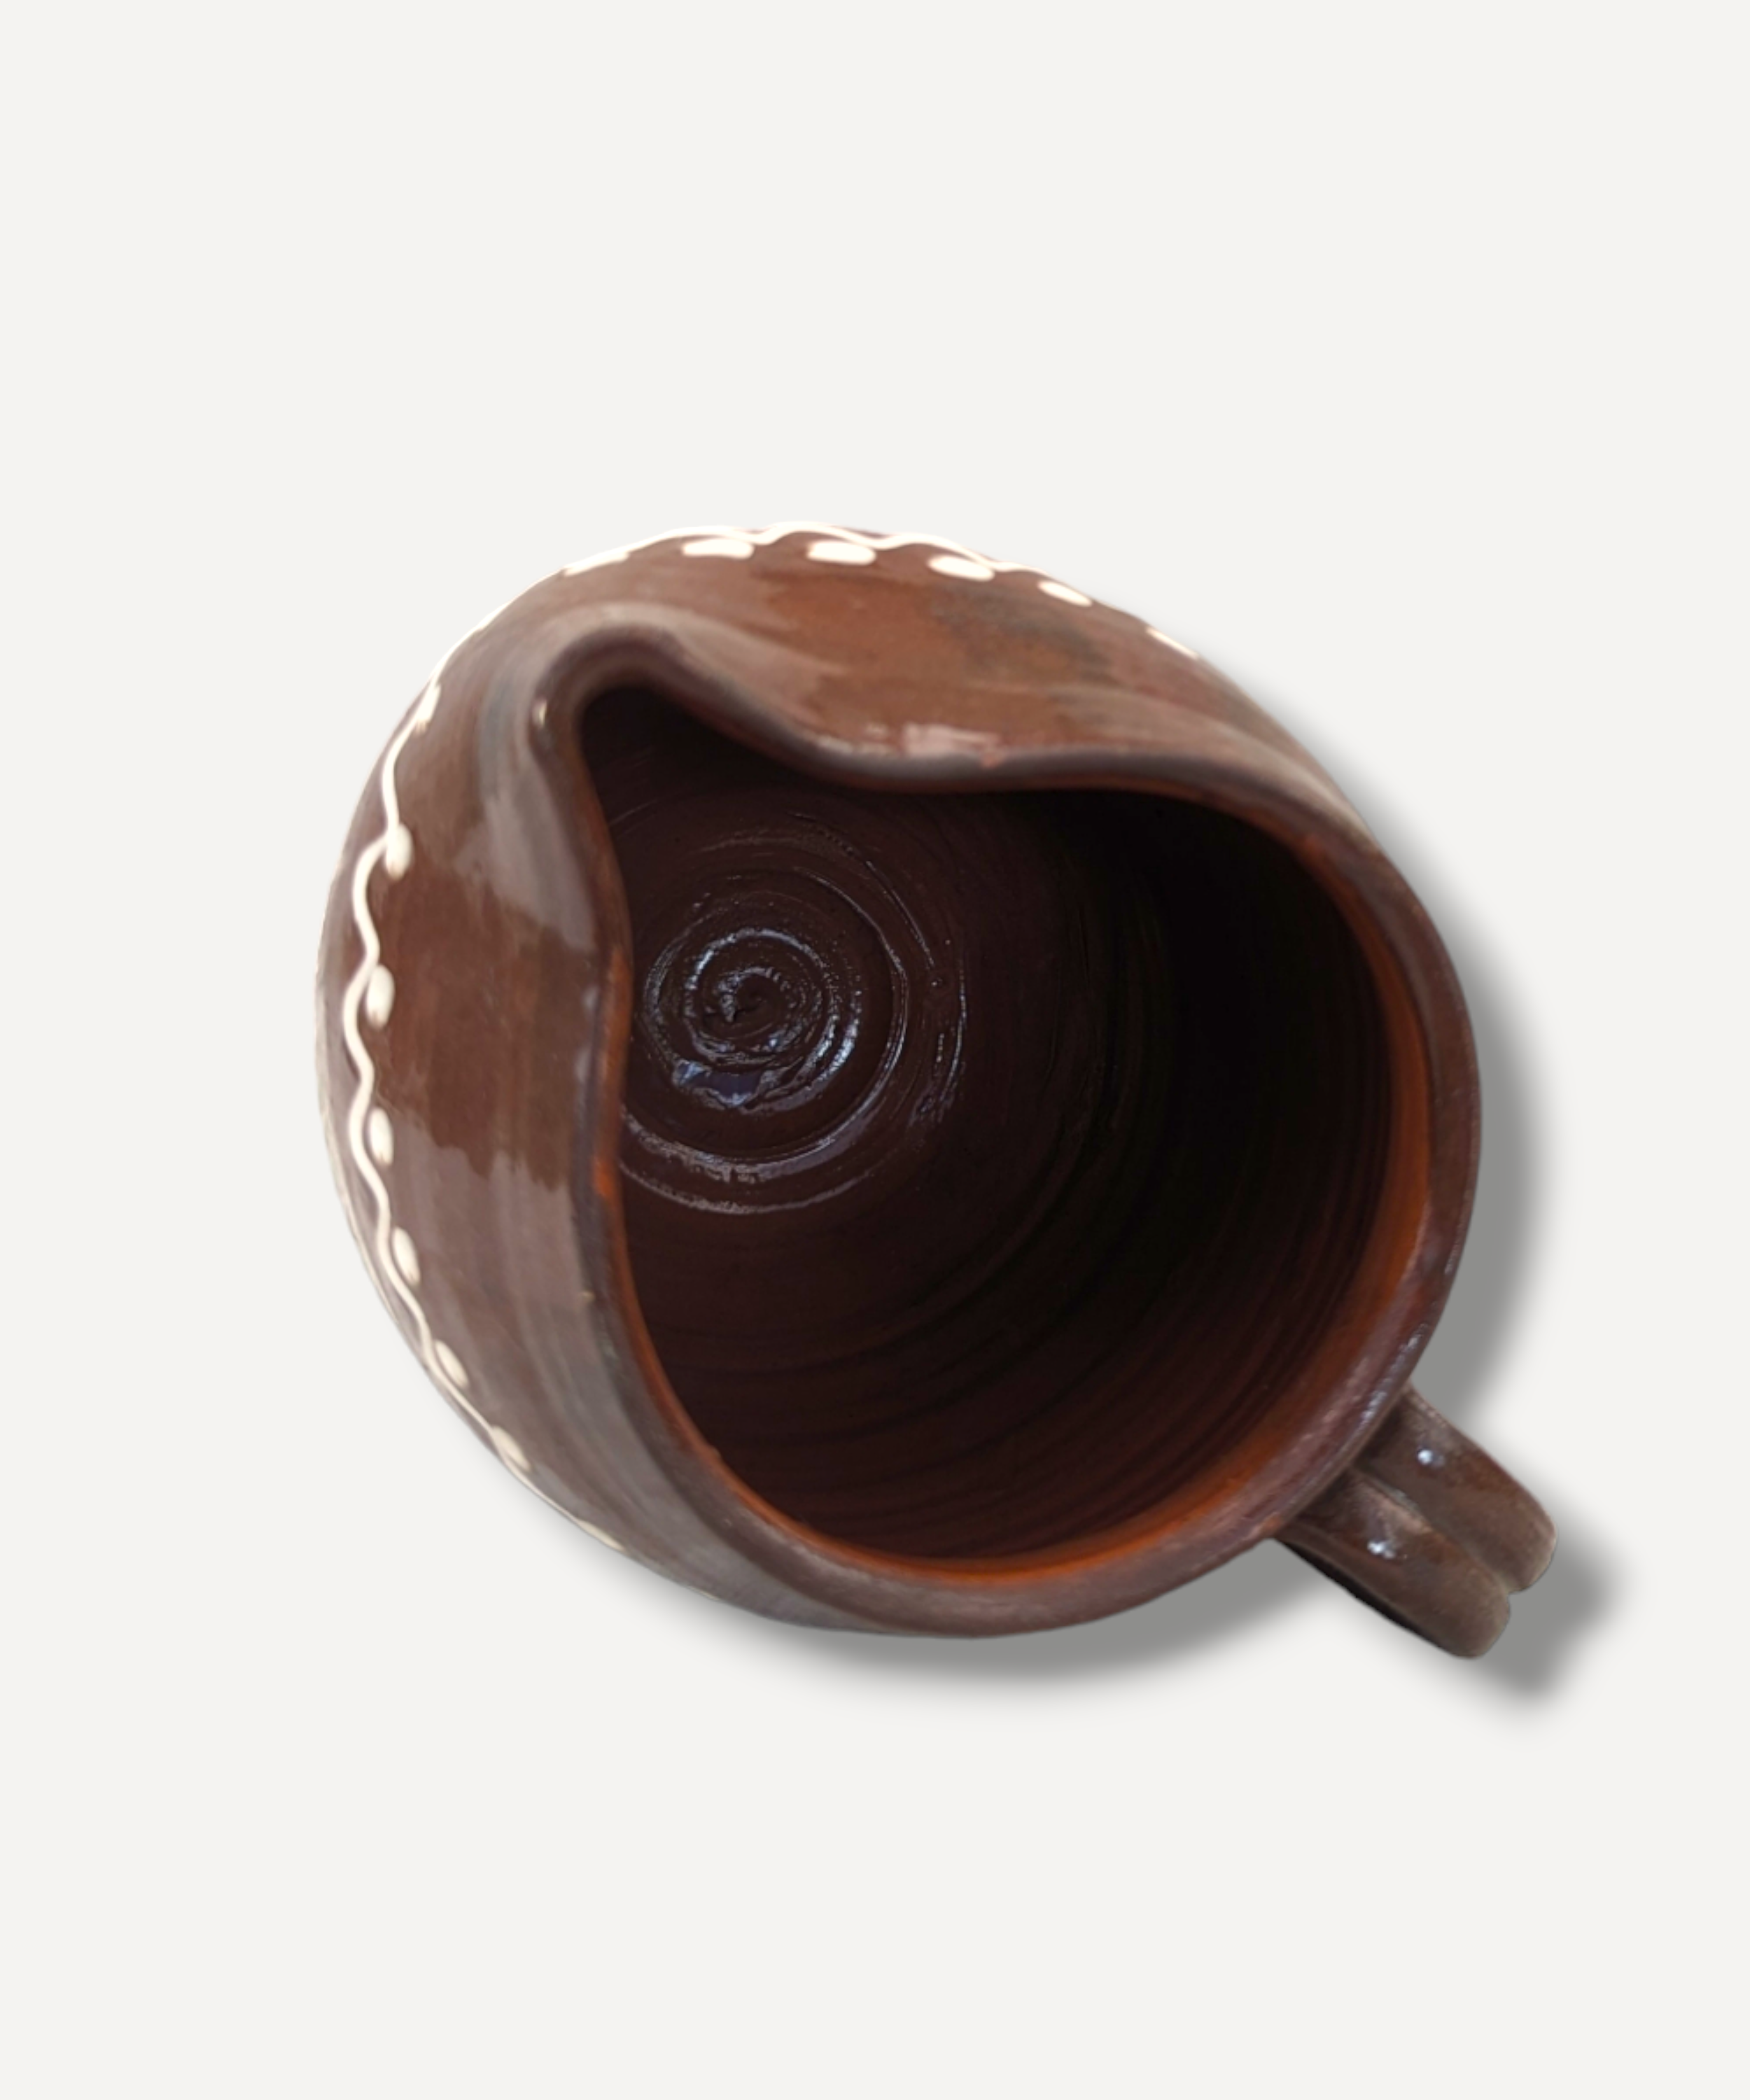 Chocolate Barrel Jug - 1L